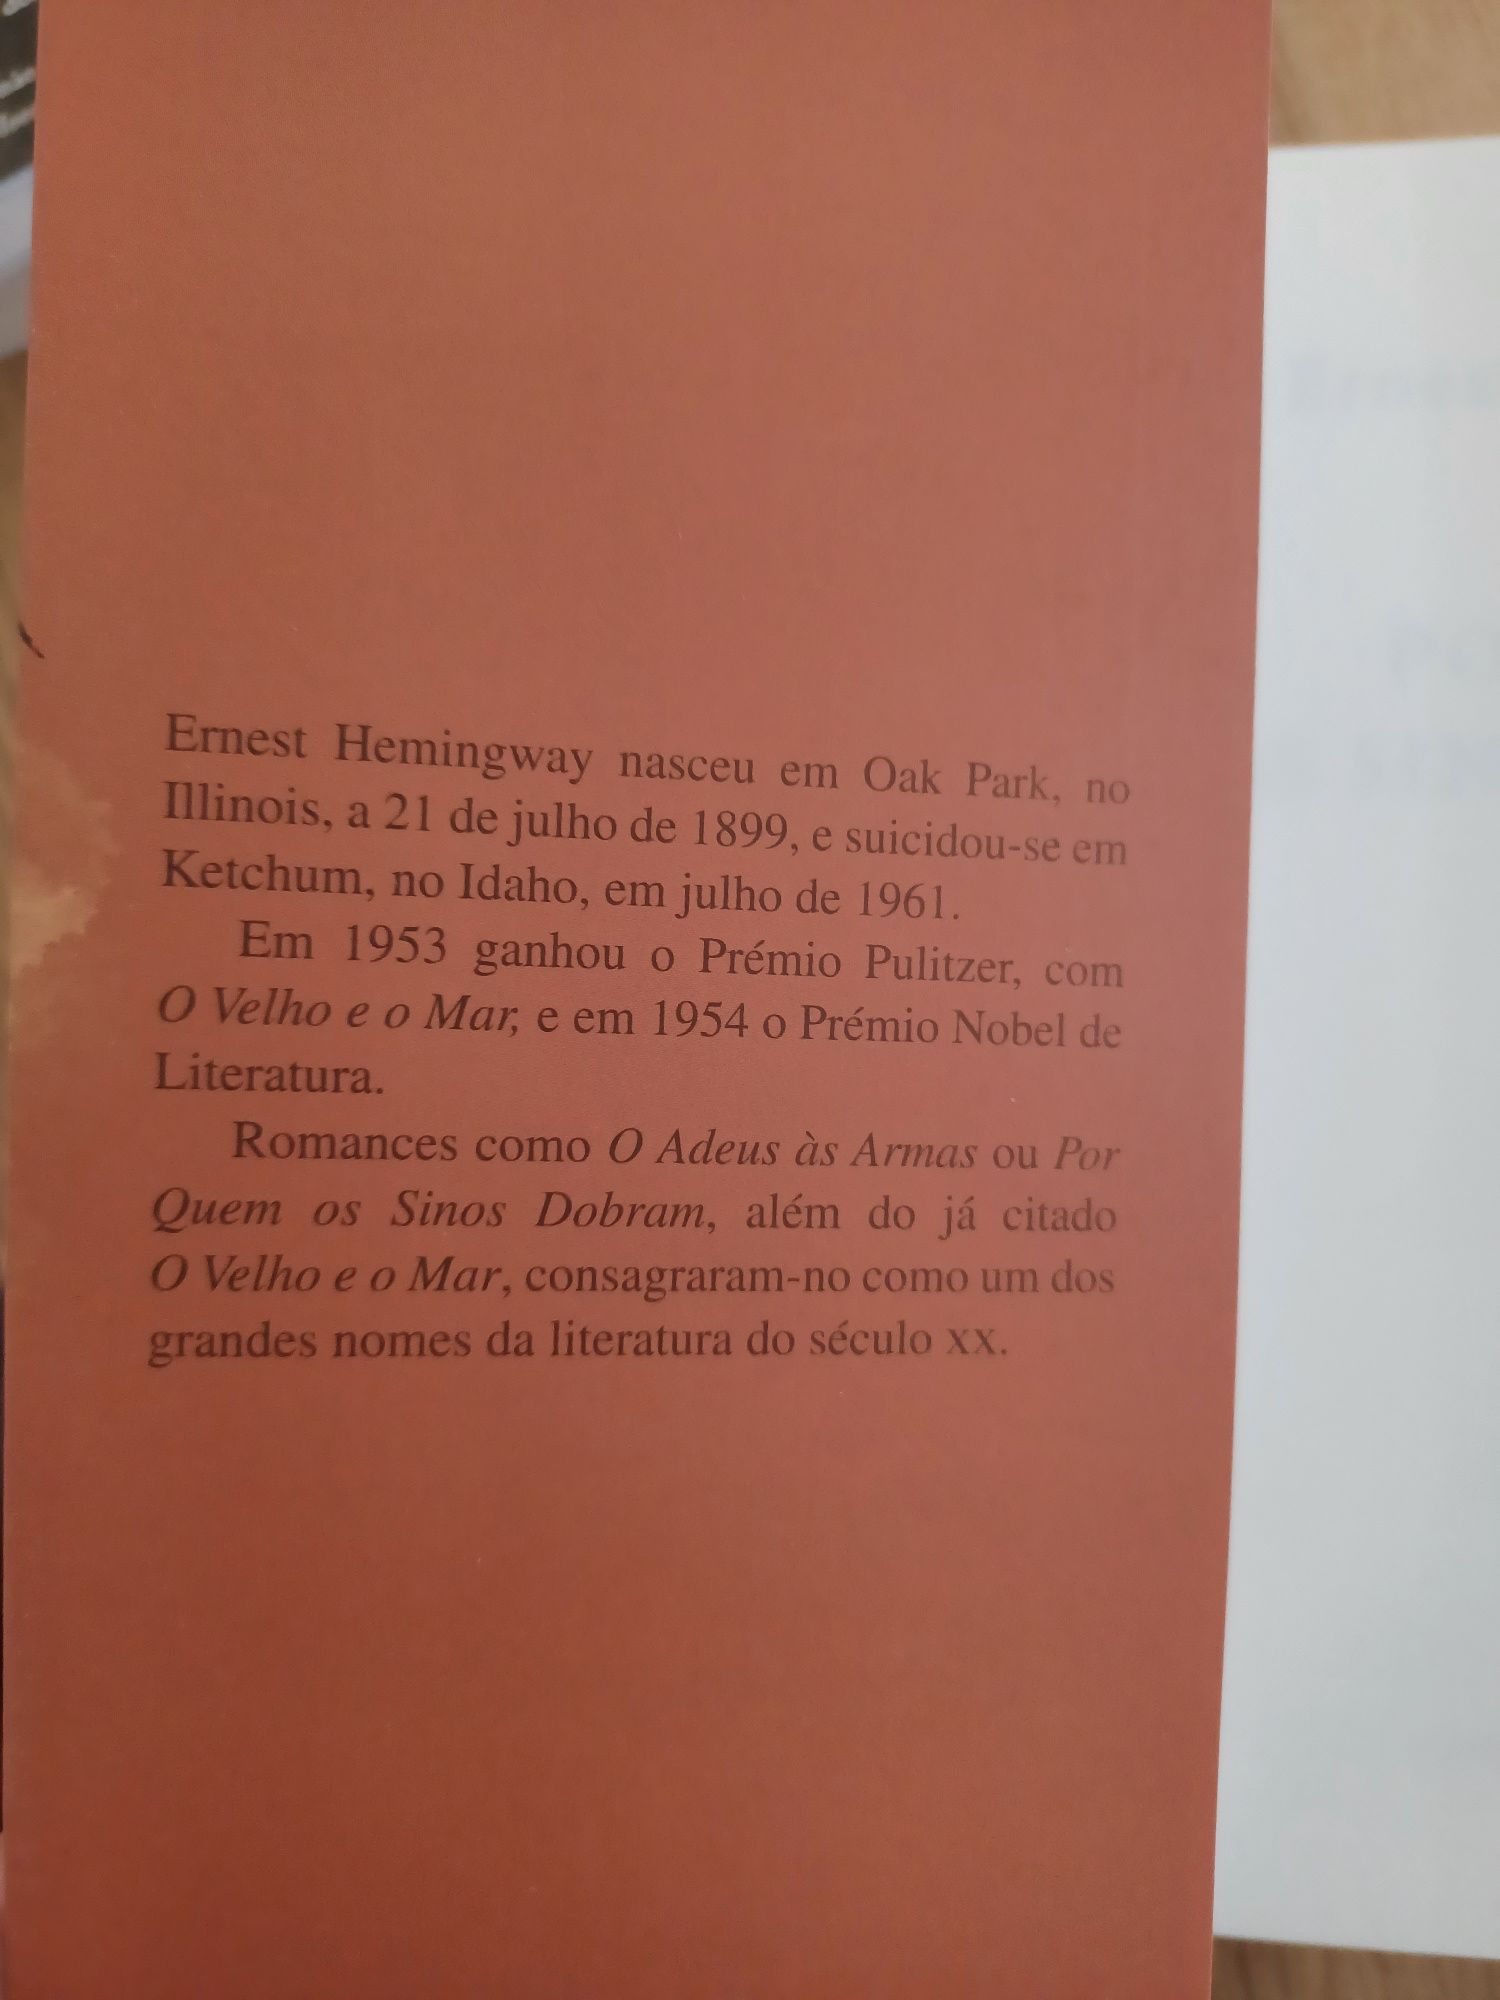 Livro Por Quem os Sinos Dobram, de Ernest Hemingway - Livros do Brasil